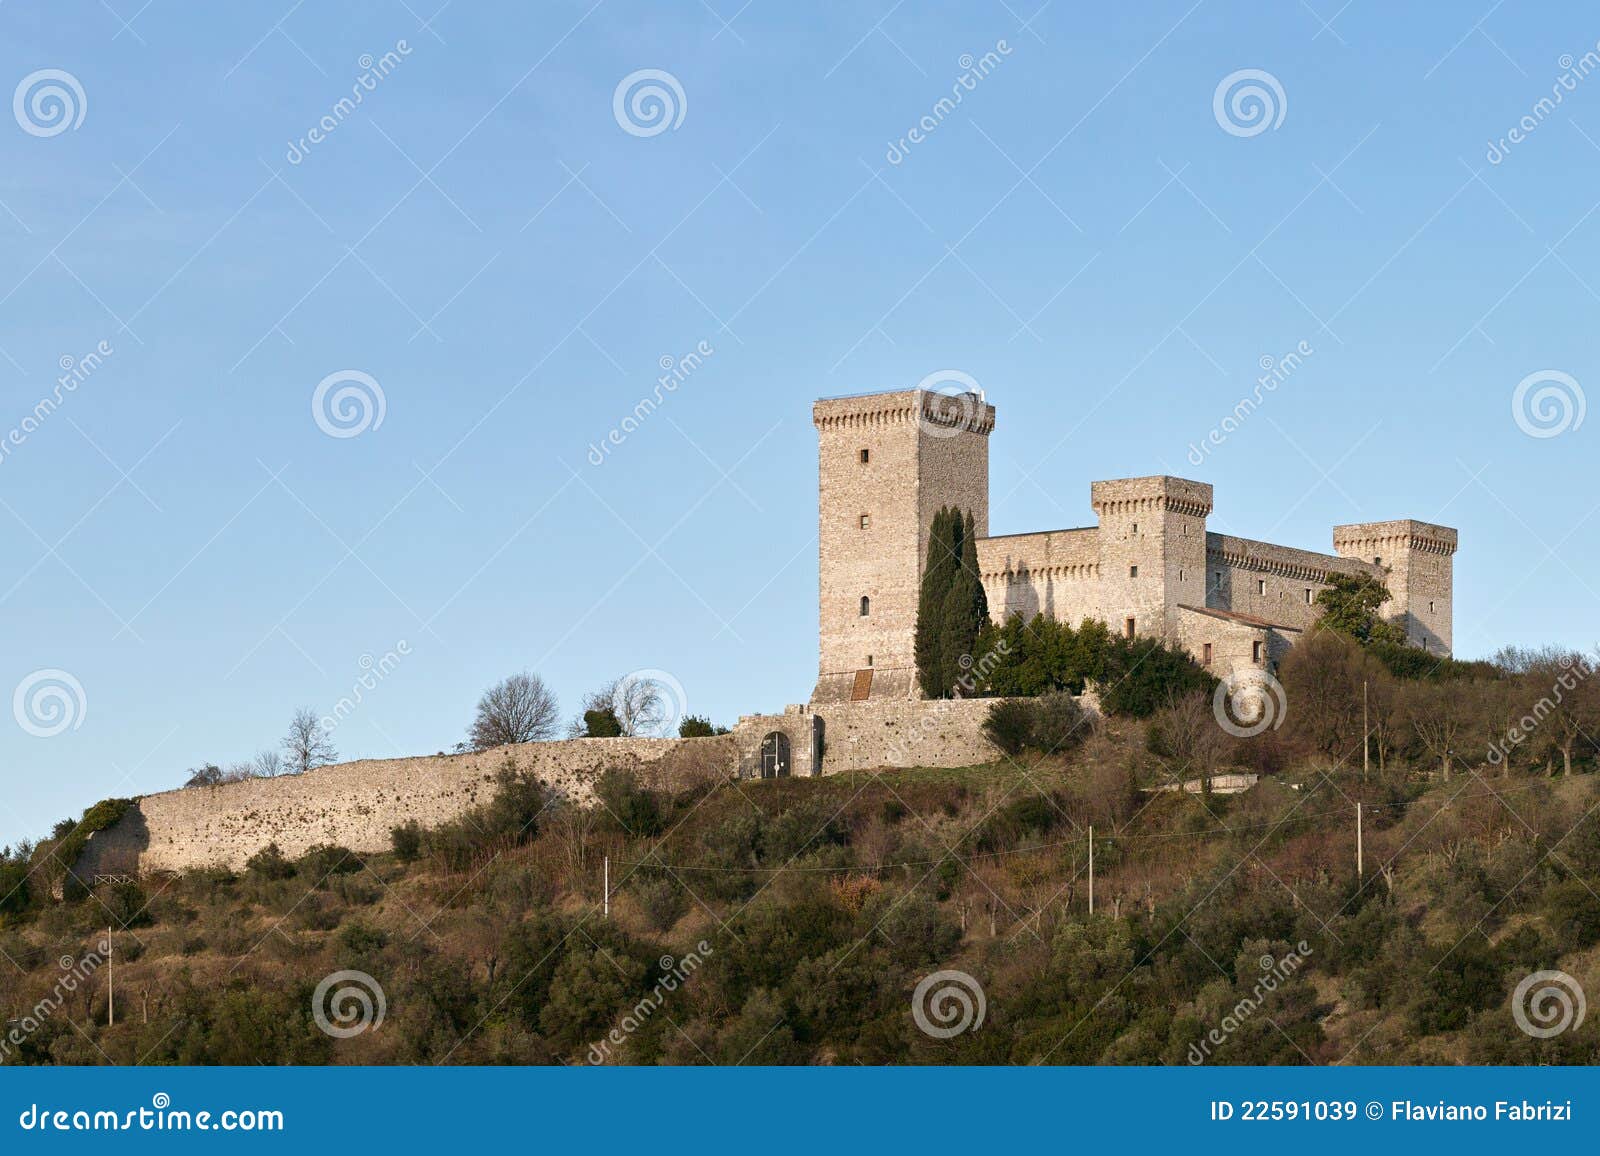 the fortress albornoz in narni